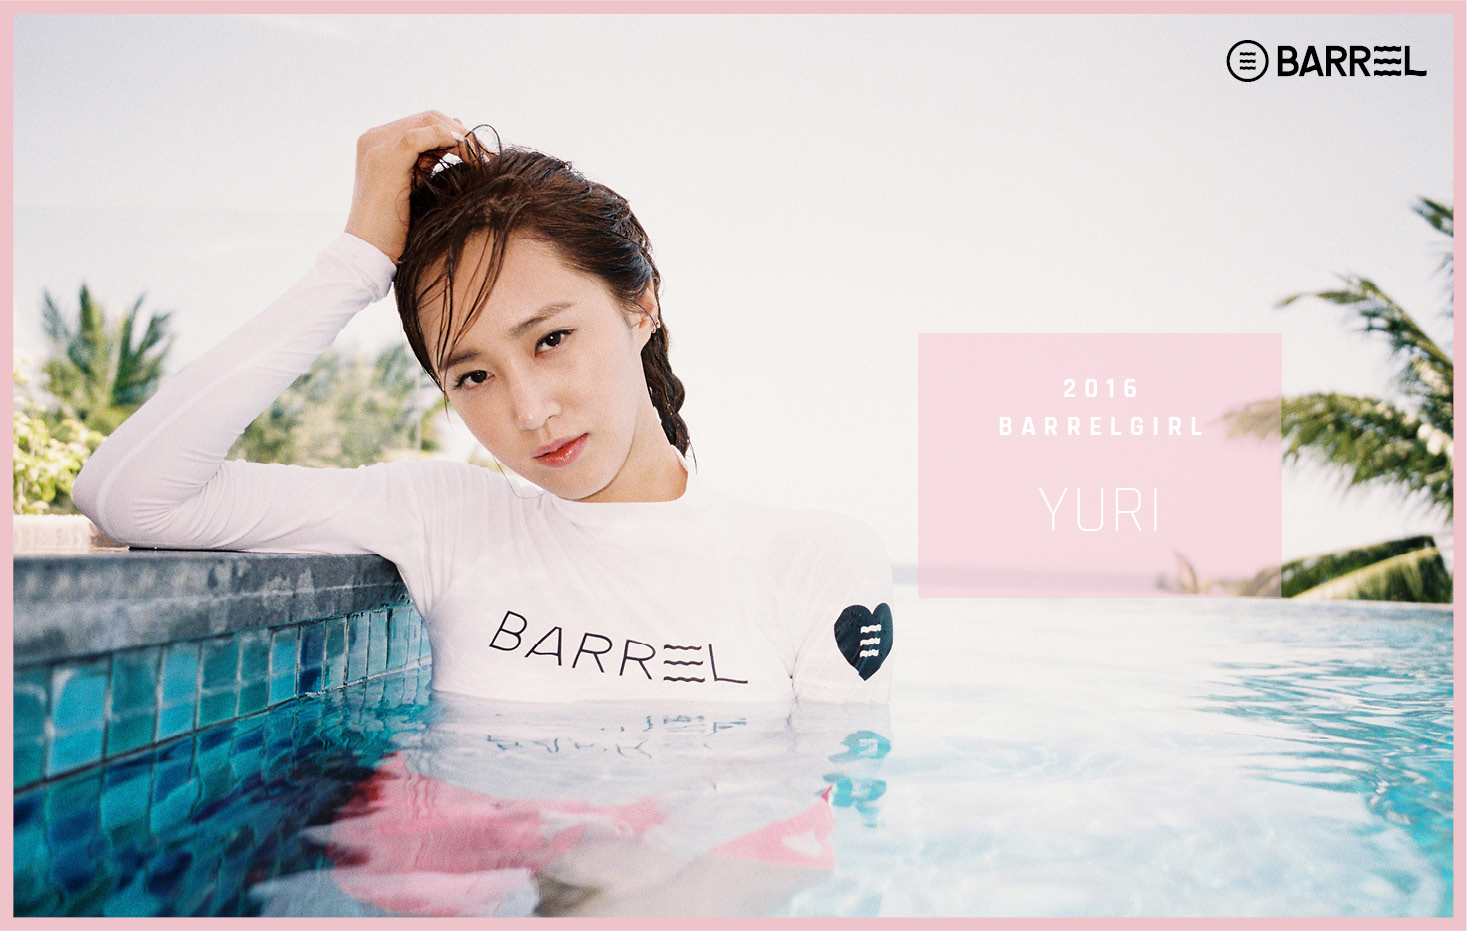 [OTHER][15-04-2016]Yuri trở thành người mẫu mới cho thương hiệu đồ bơi "BARREL" Yurivivian_boracay12